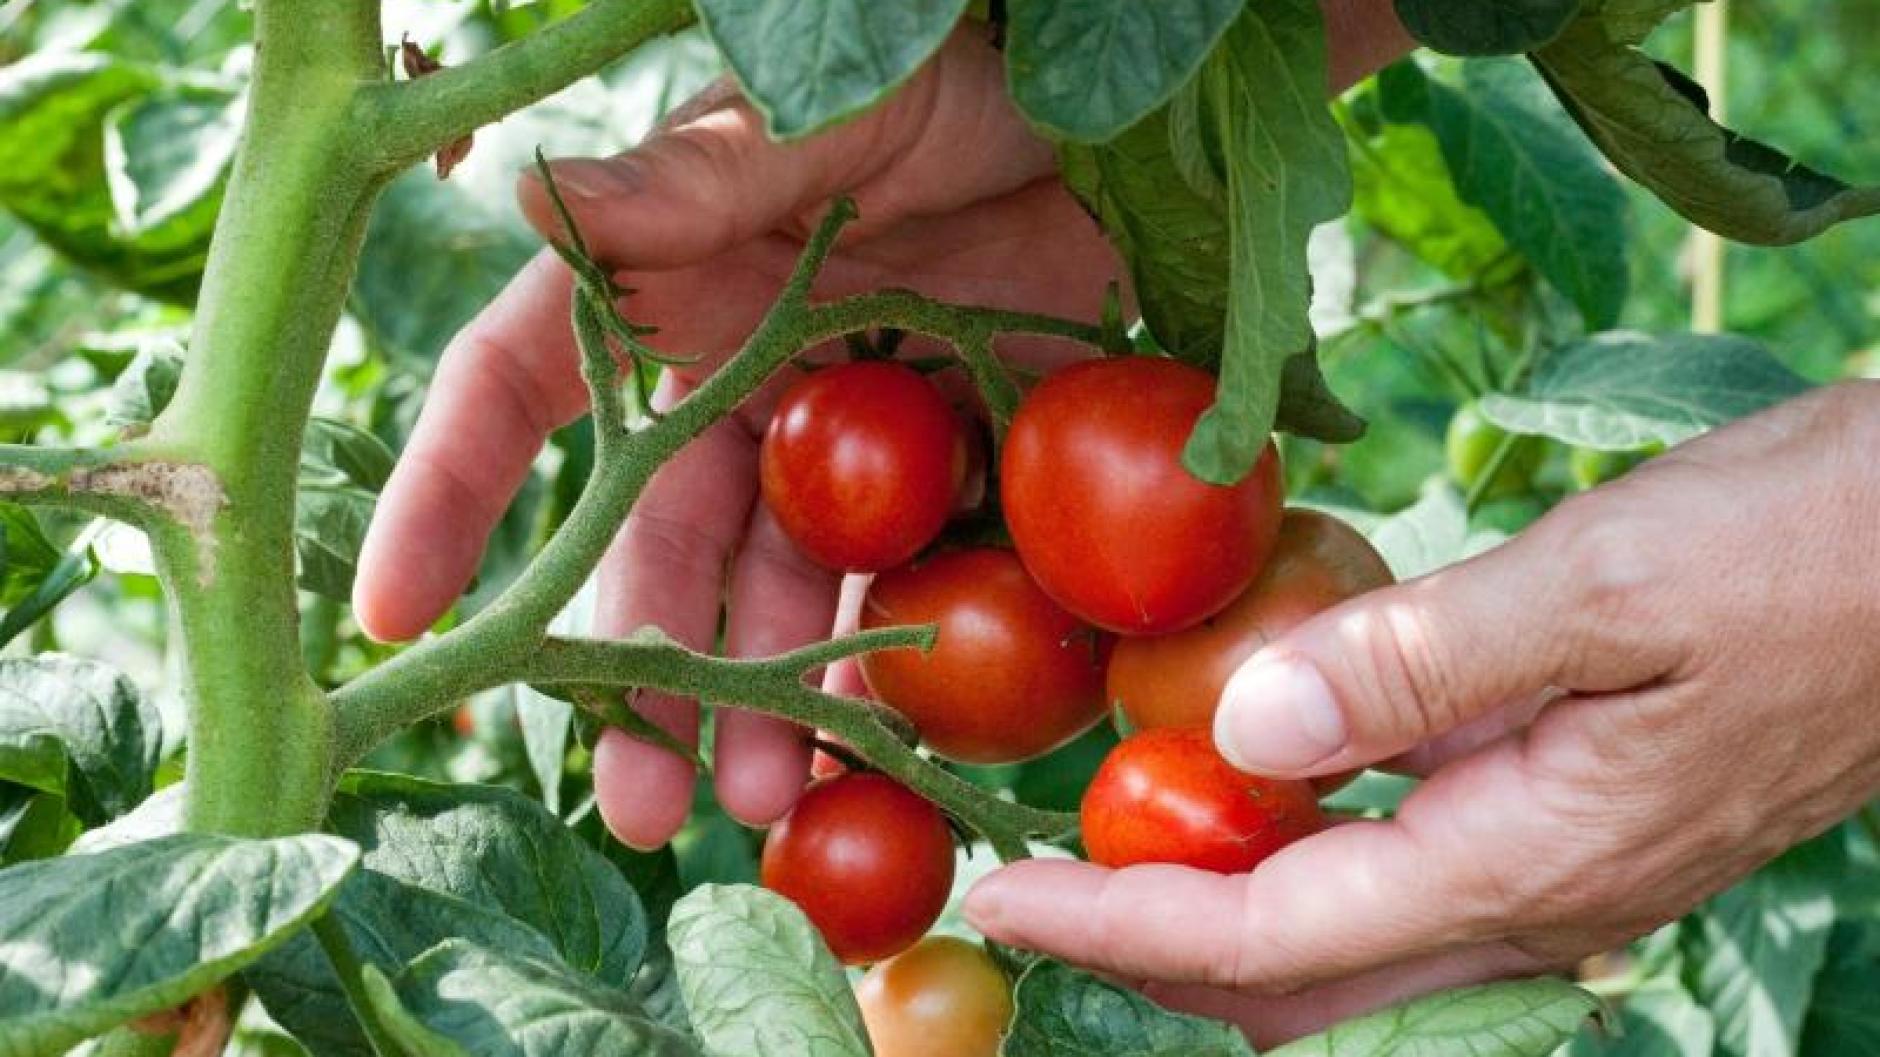 Freizeit: Entweder Tomate oder Kartoffel anbauen | Augsburger Allgemeine